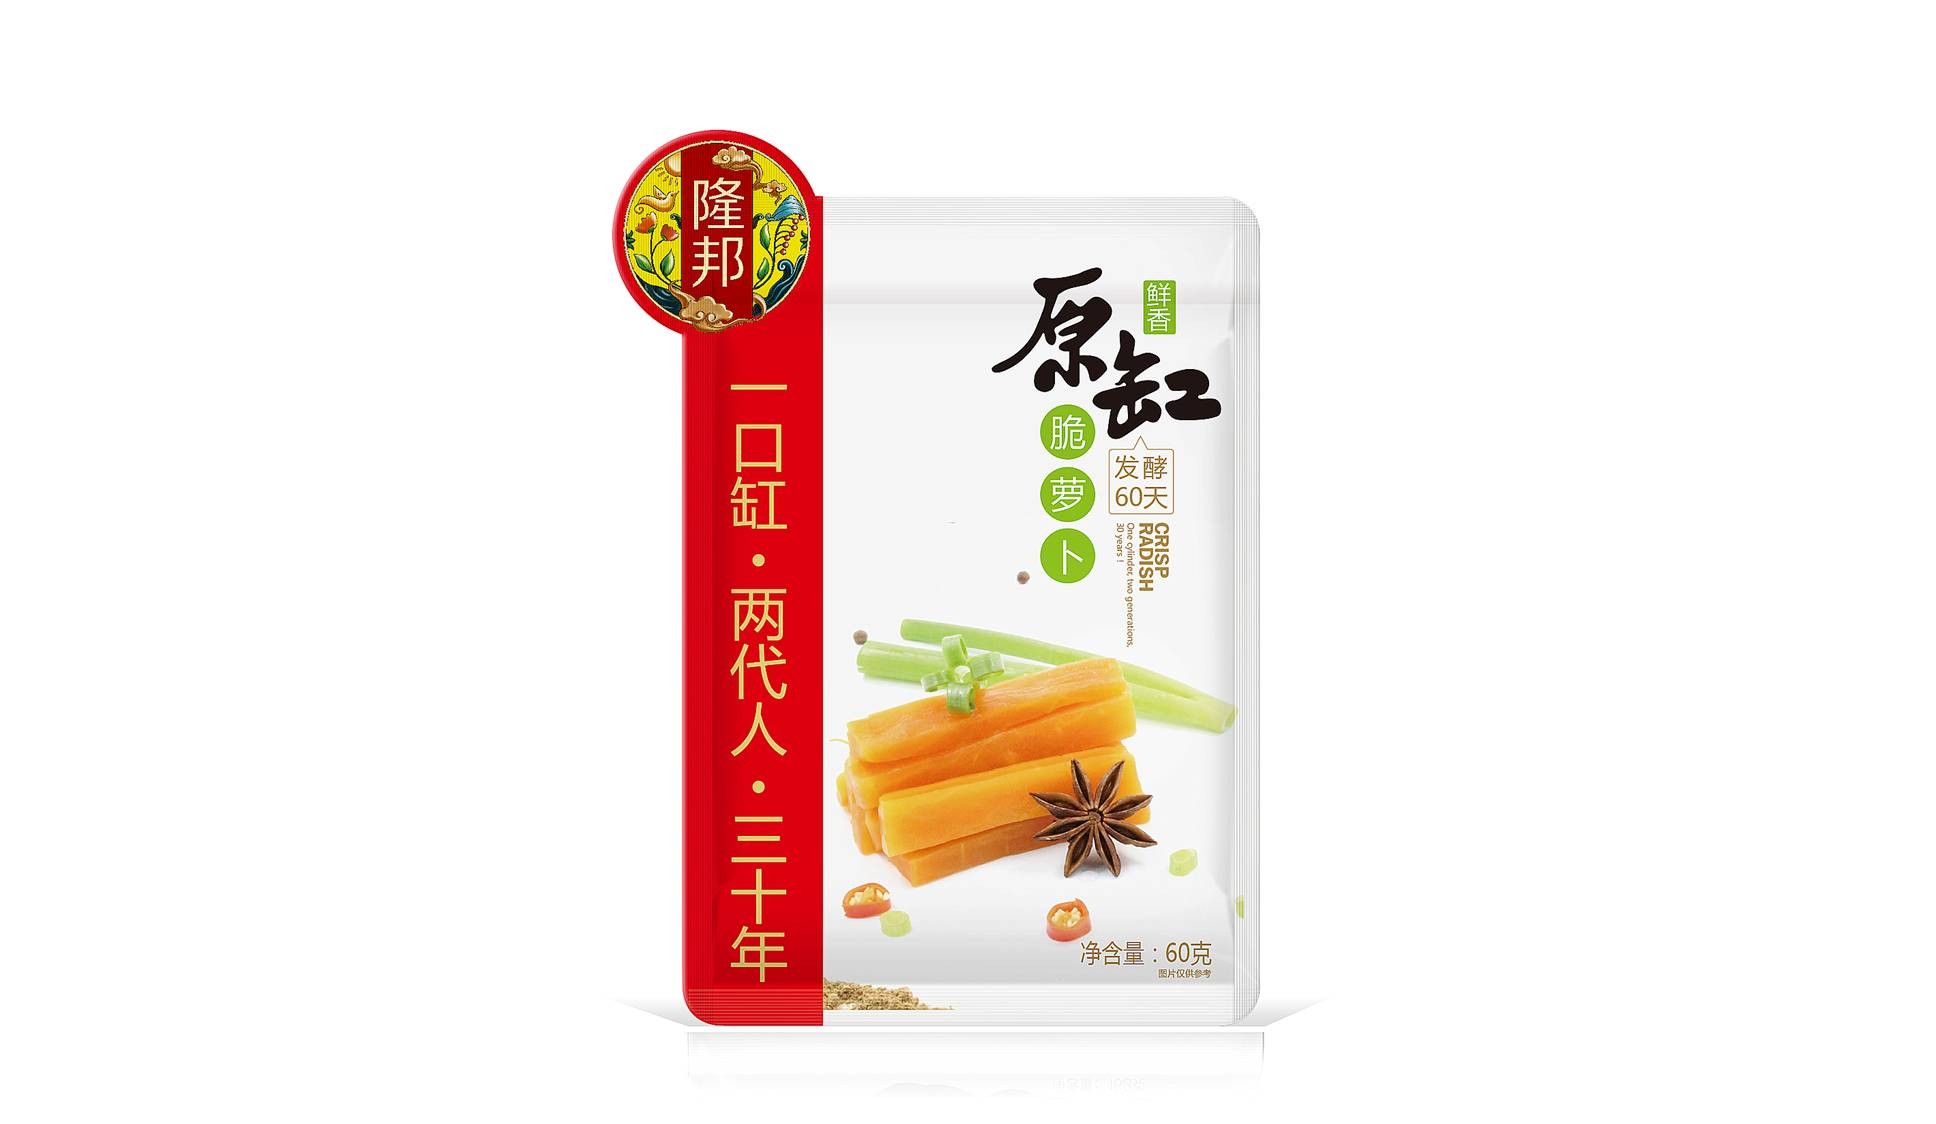 隆邦酱菜——衡水徐桂亮品牌设计